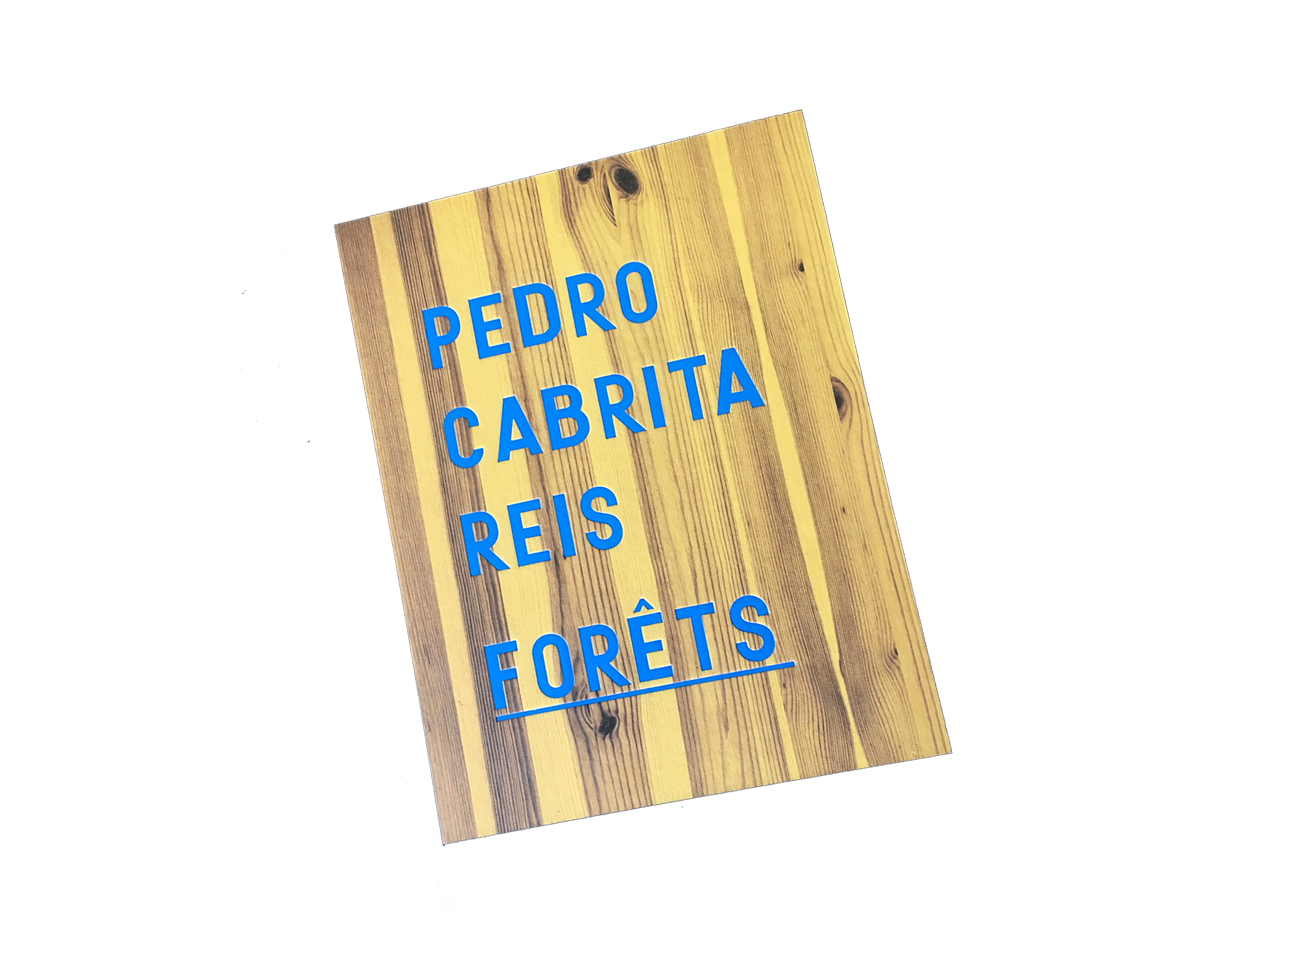 Pedro Cabrita Reis, Forêts